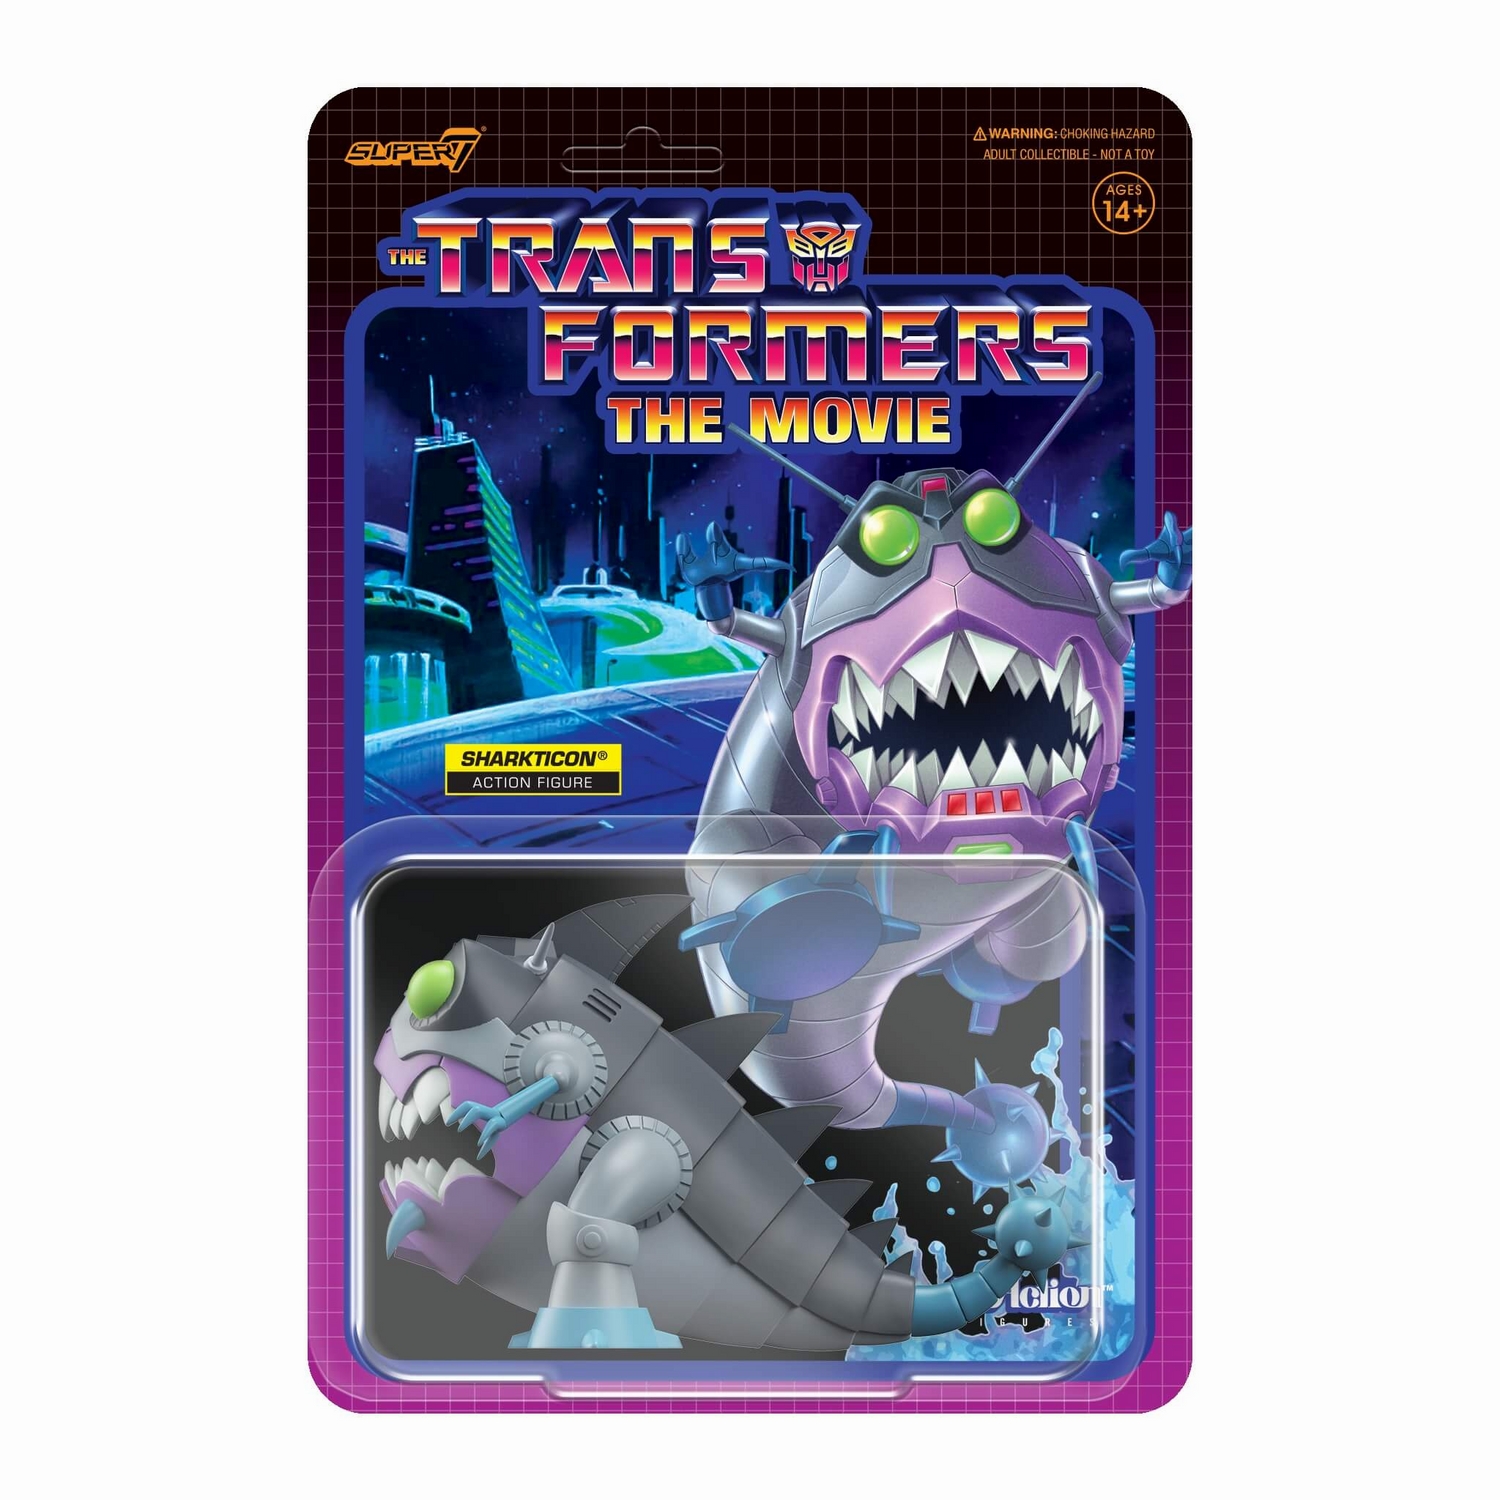 RE-Transformers_W6_Sharkticon_Card_2048.jpg